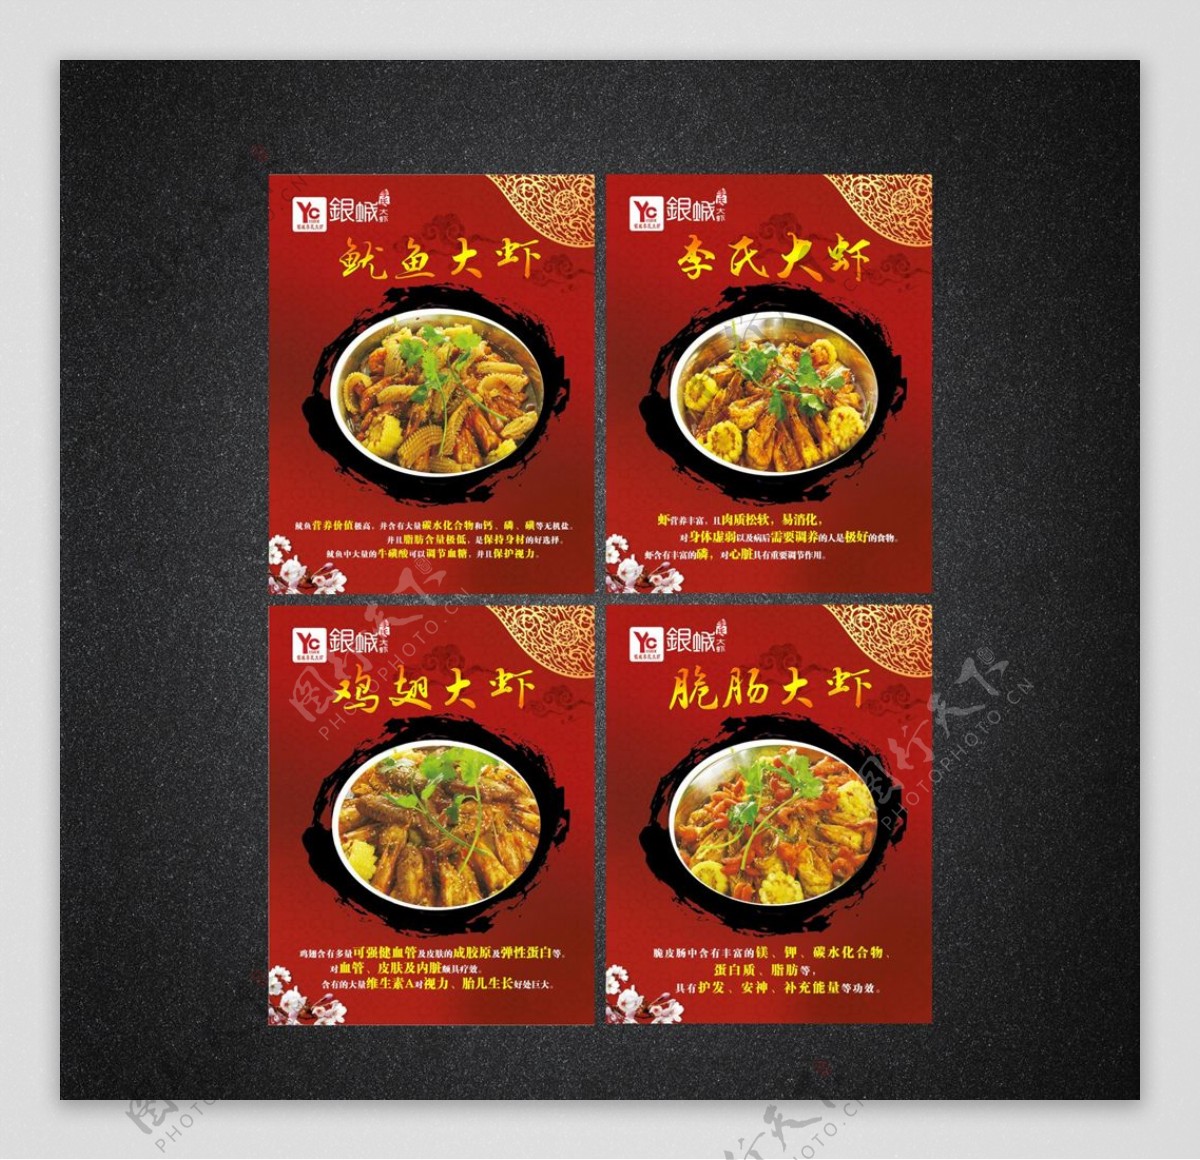 大虾菜品海报